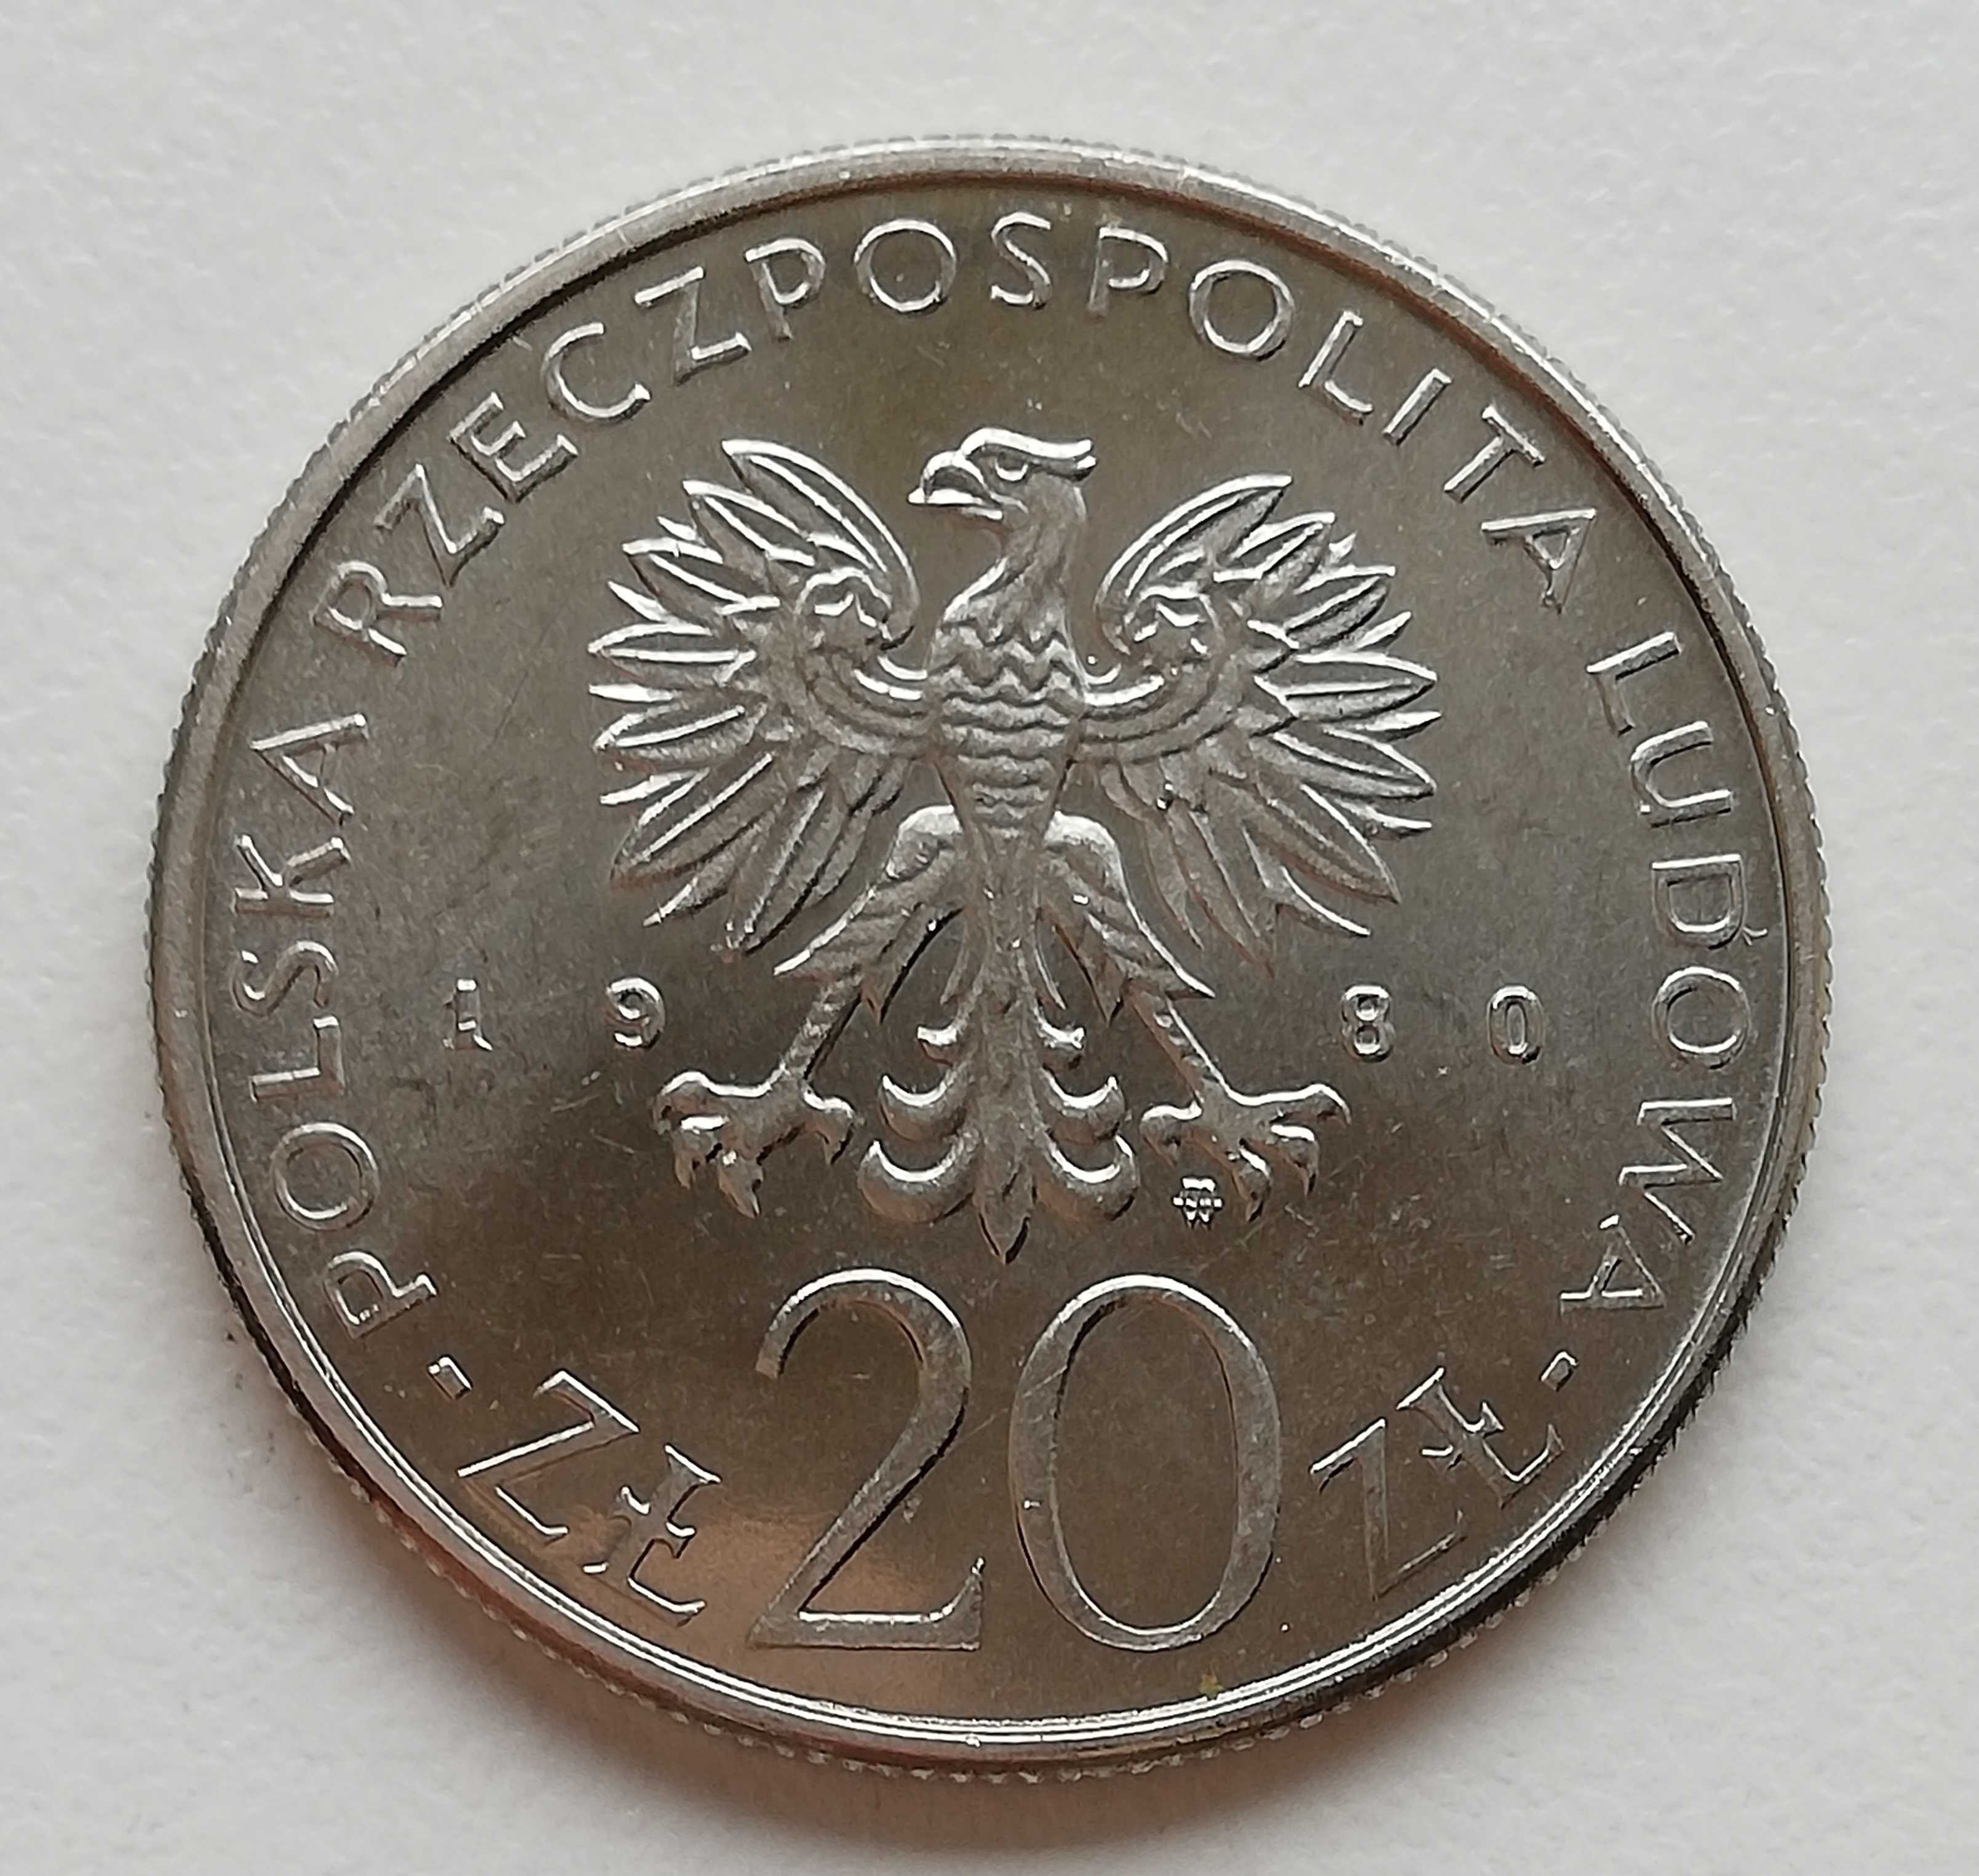 Moneta 20 zł 1980 rok  50 Lat Daru Pomorza  stan SM na prezent